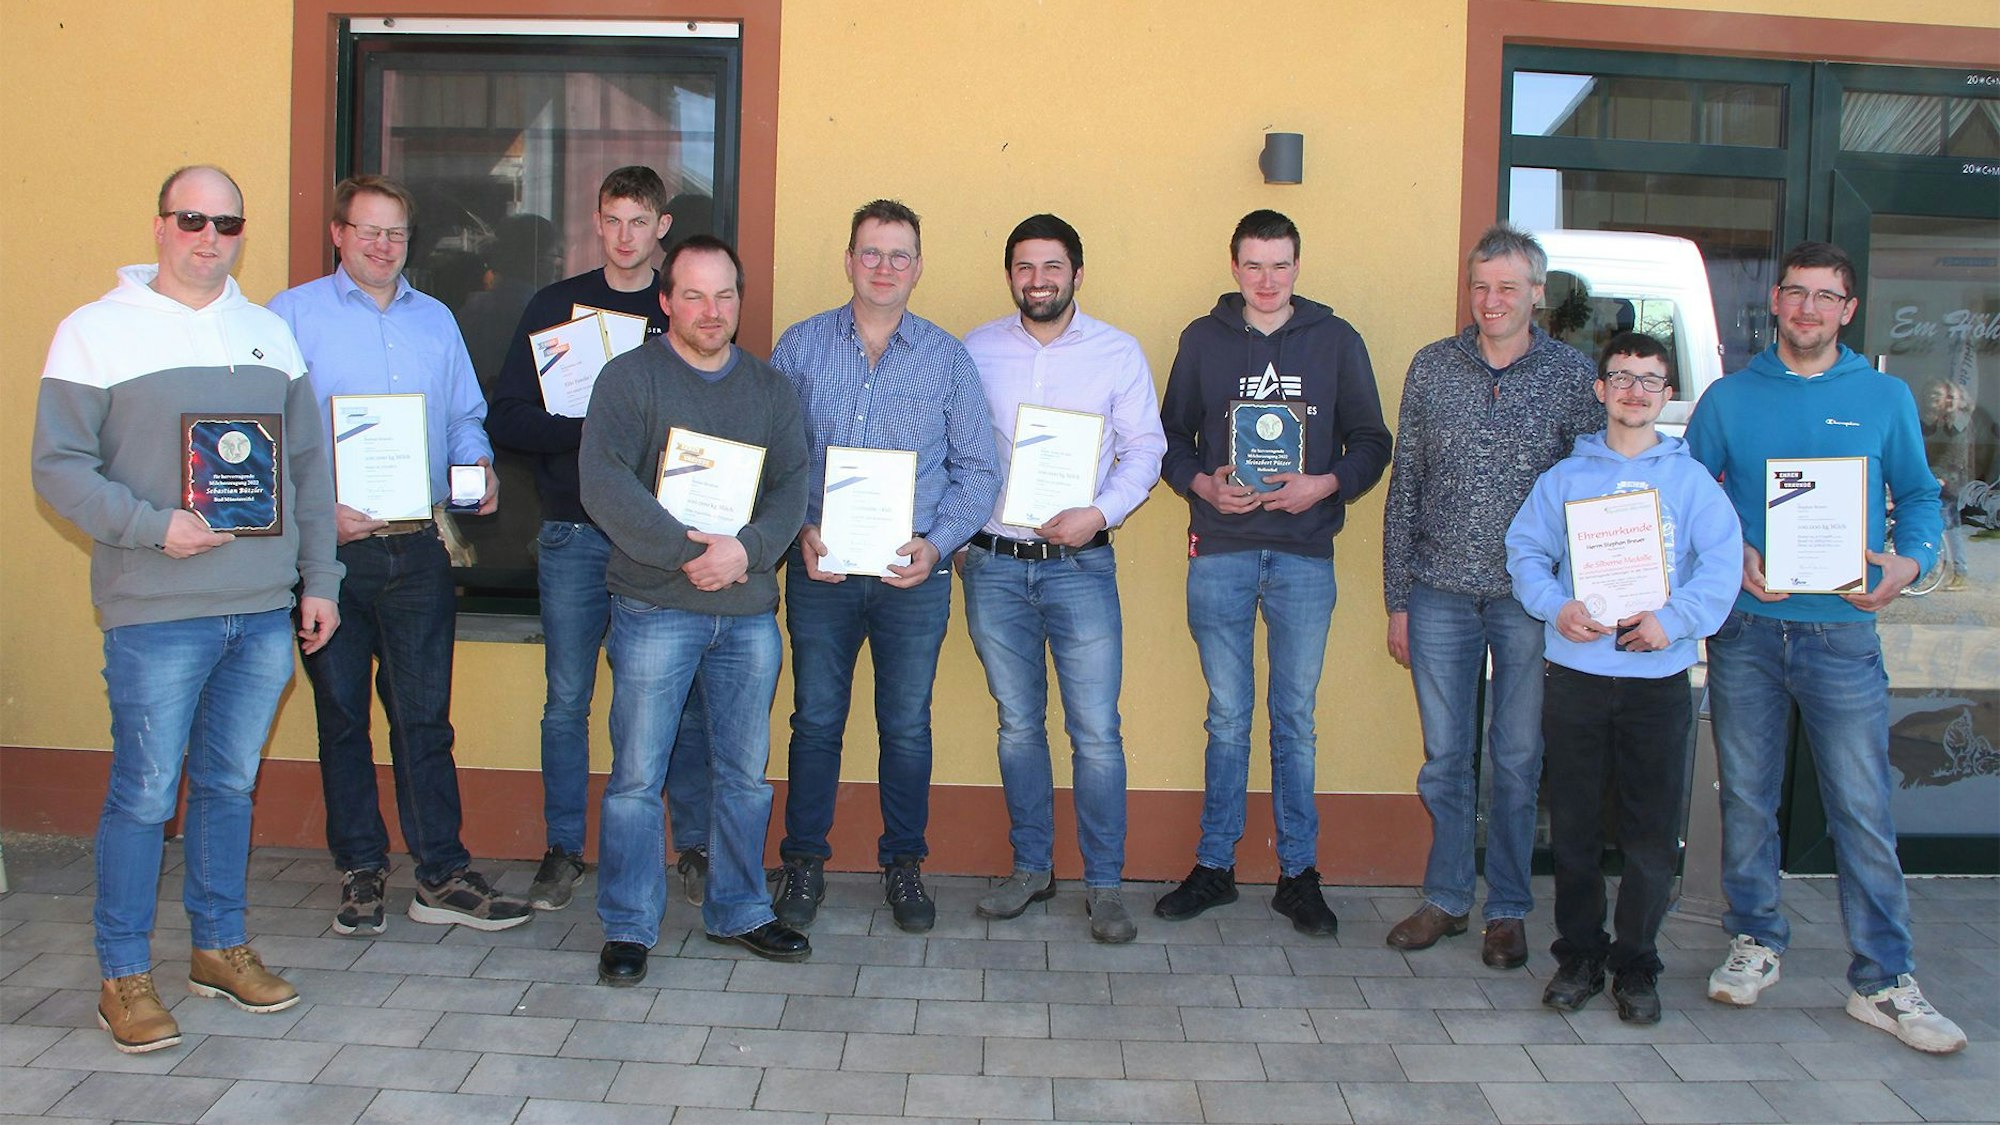 Zehn der ausgezeichneten Milchviehlandwirte aus dem Kreis Euskirchen mit ihren Auszeichnungen